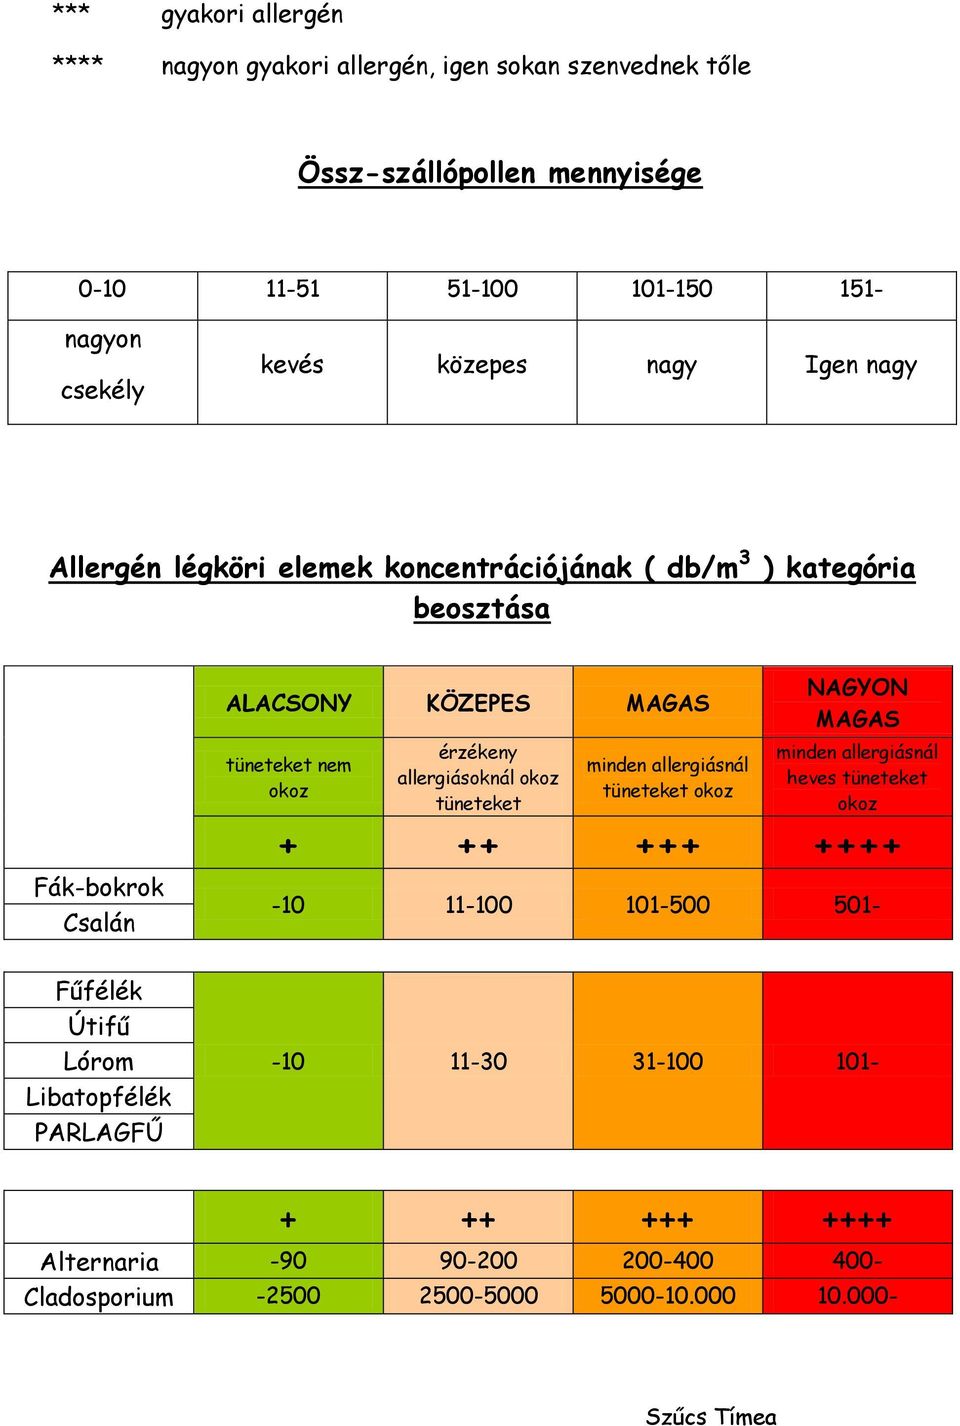 érzékeny allergiásoknál okoz tüneteket minden allergiásnál tüneteket okoz NAGYON MAGAS minden allergiásnál heves tüneteket okoz + ++ +++ ++++ -10 11-100 101-500